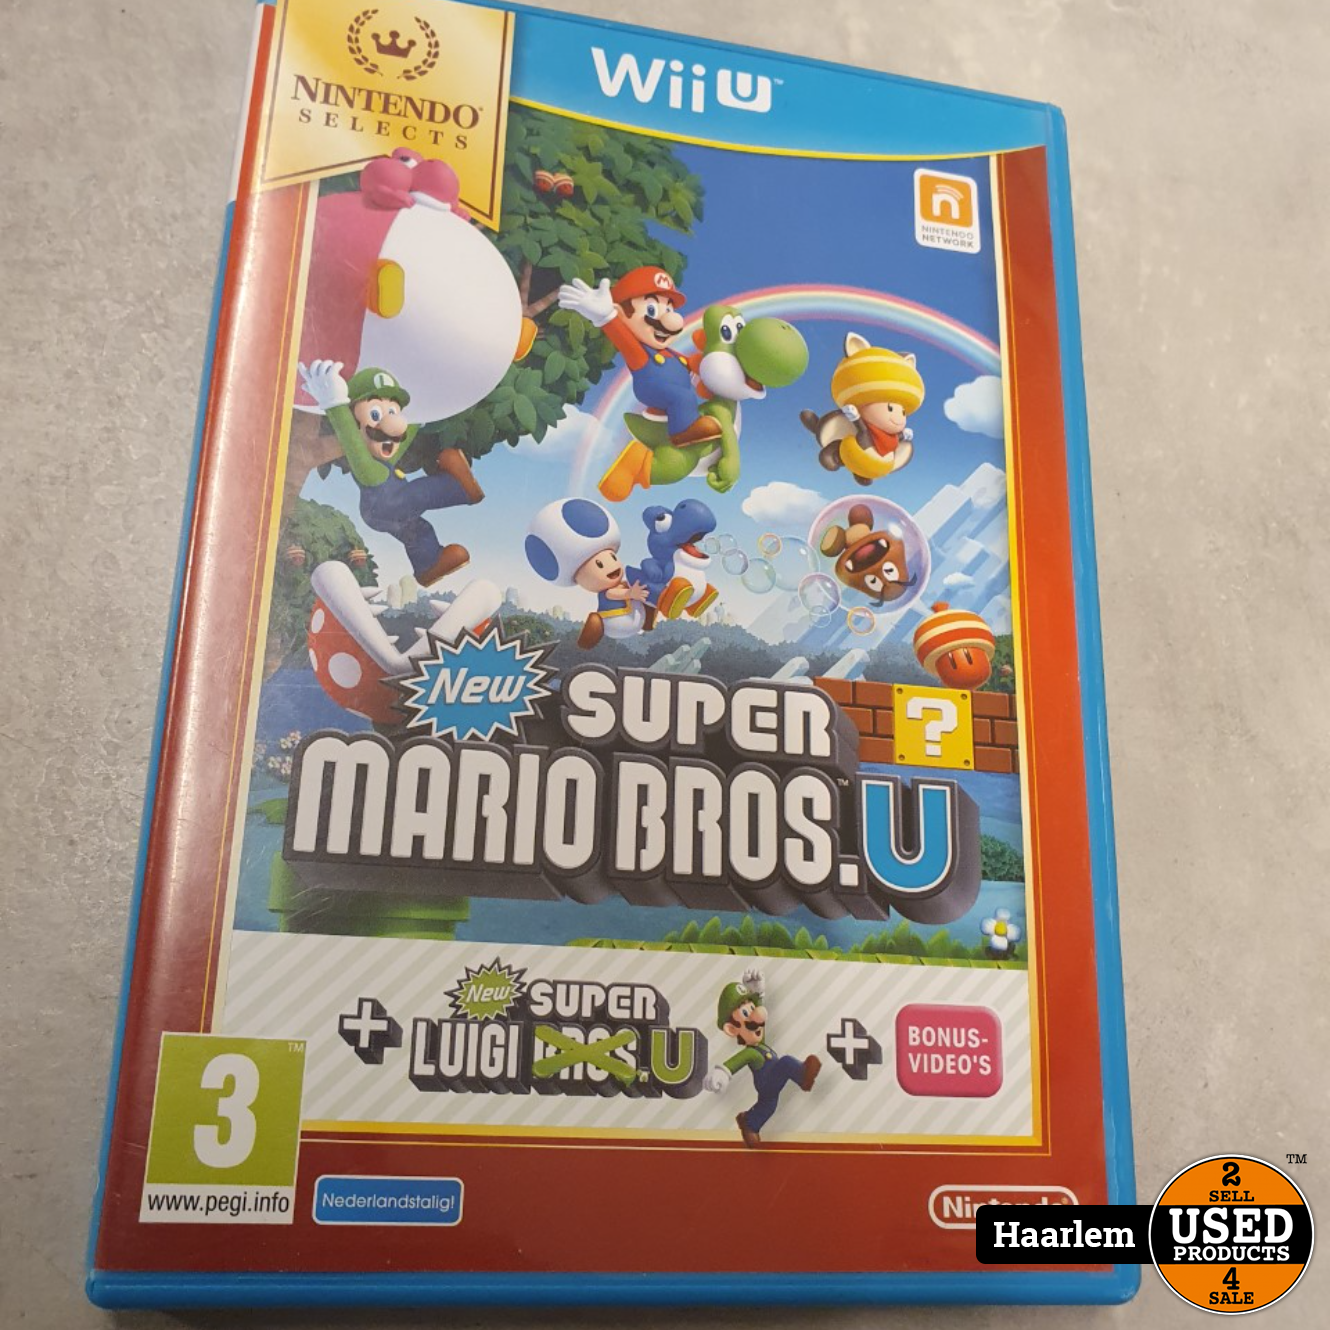 New Super Mario Bros. New Super Luigi U Wii U game - Used Products Haarlem